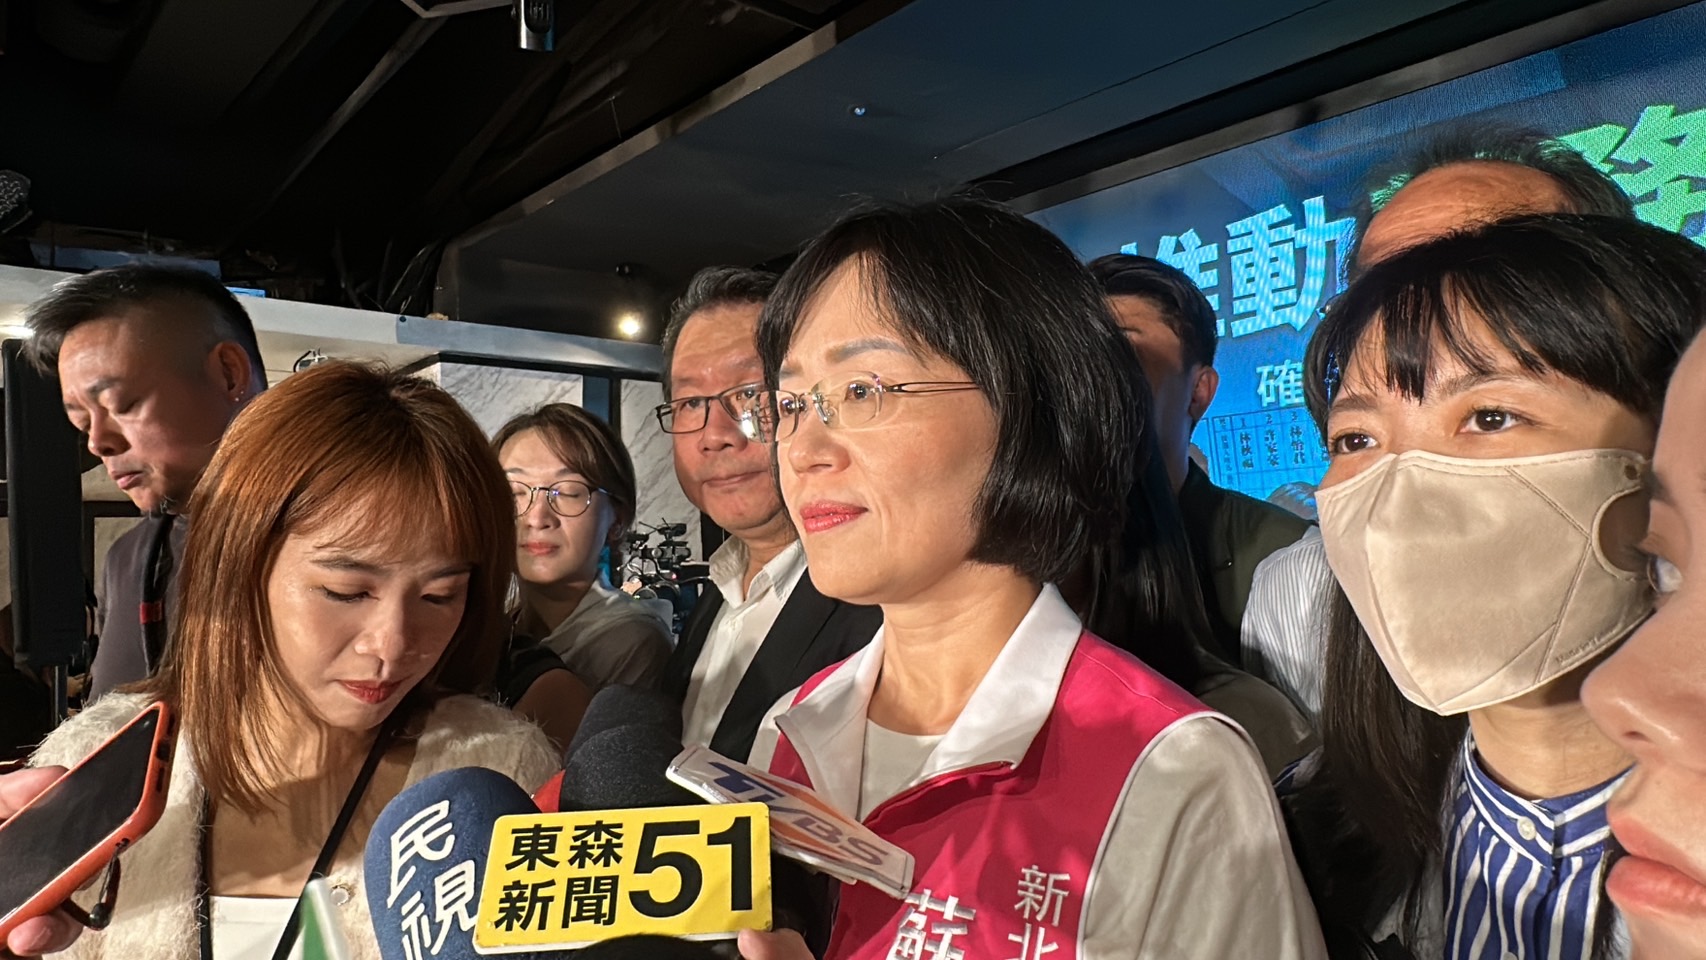 苏巧慧受访表示，台湾一直是民权法治的宪政国家，追求及守护民主自由，也是这里世世代代人一起努力的目标。记者张曼苹／摄影